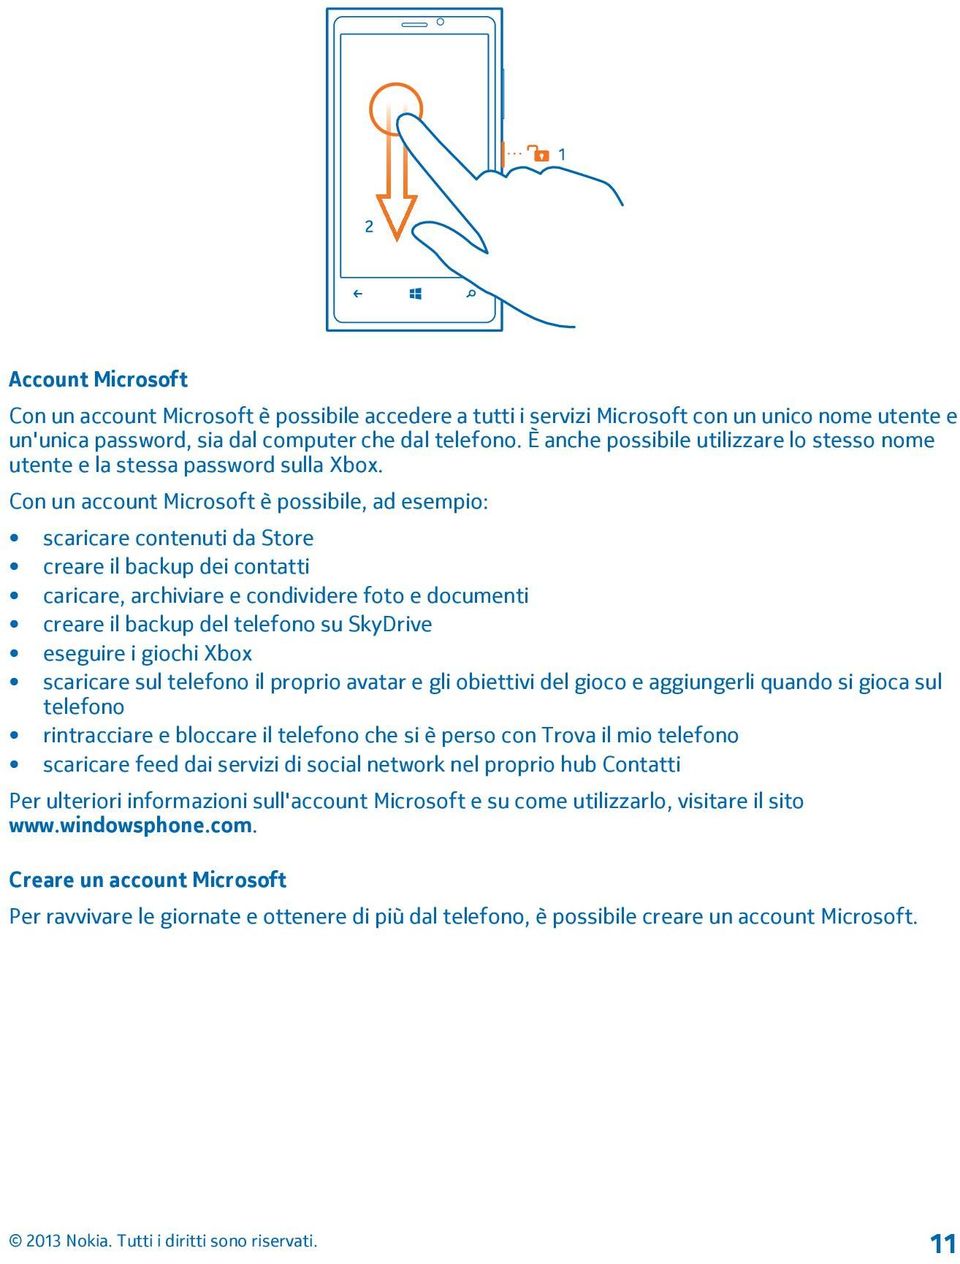 Con un account Microsoft è possibile, ad esempio: scaricare contenuti da Store creare il backup dei contatti caricare, archiviare e condividere foto e documenti creare il backup del telefono su